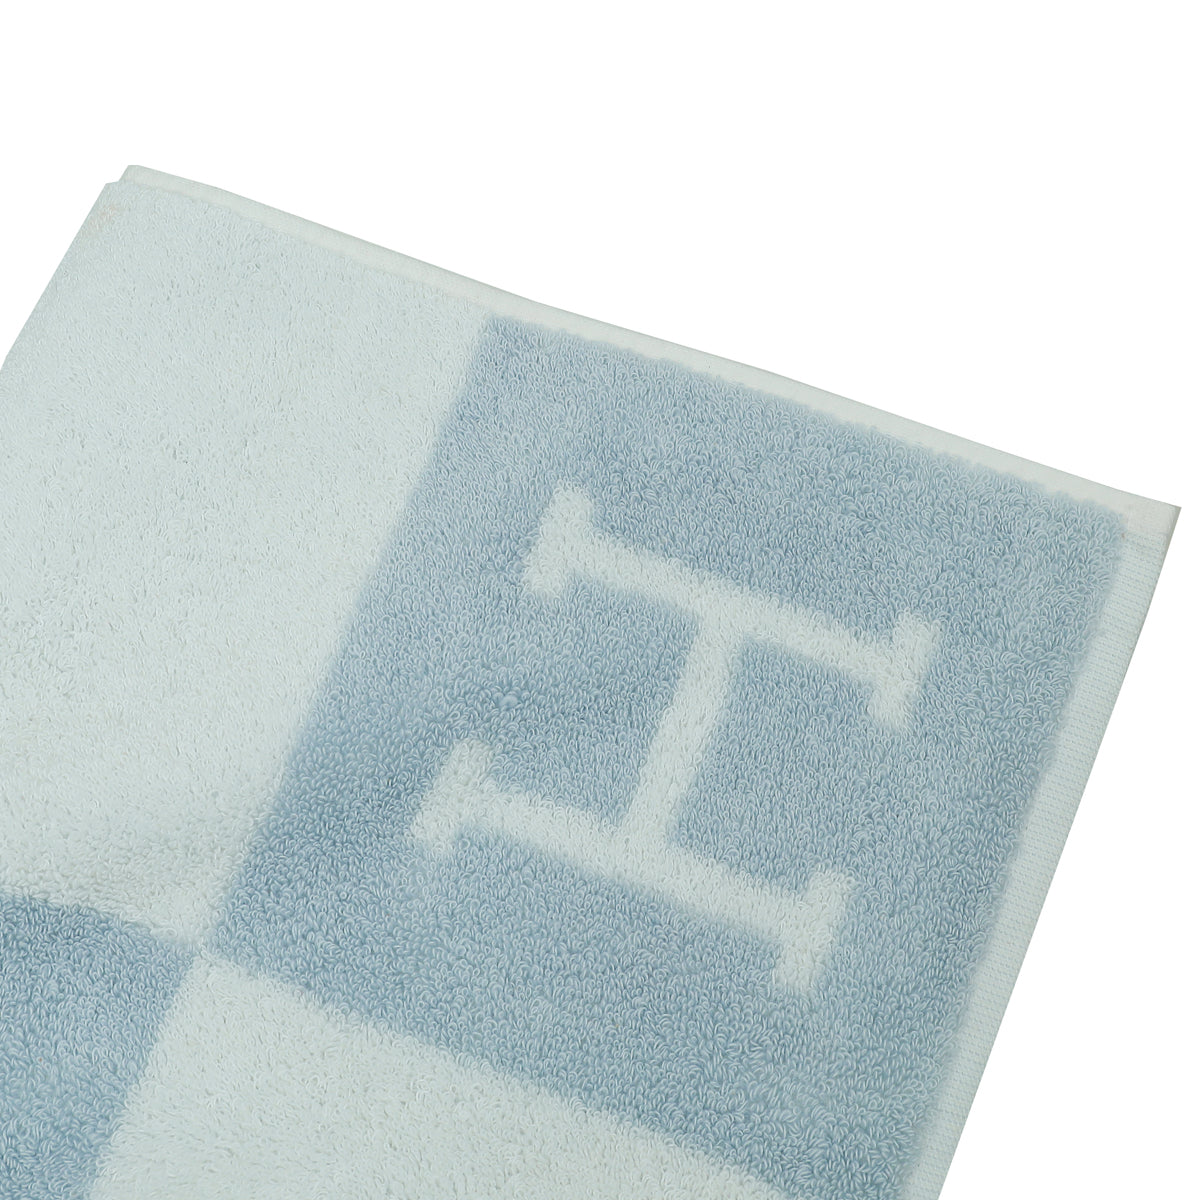 Hermes Bleu Glacier Avalon Towel Set